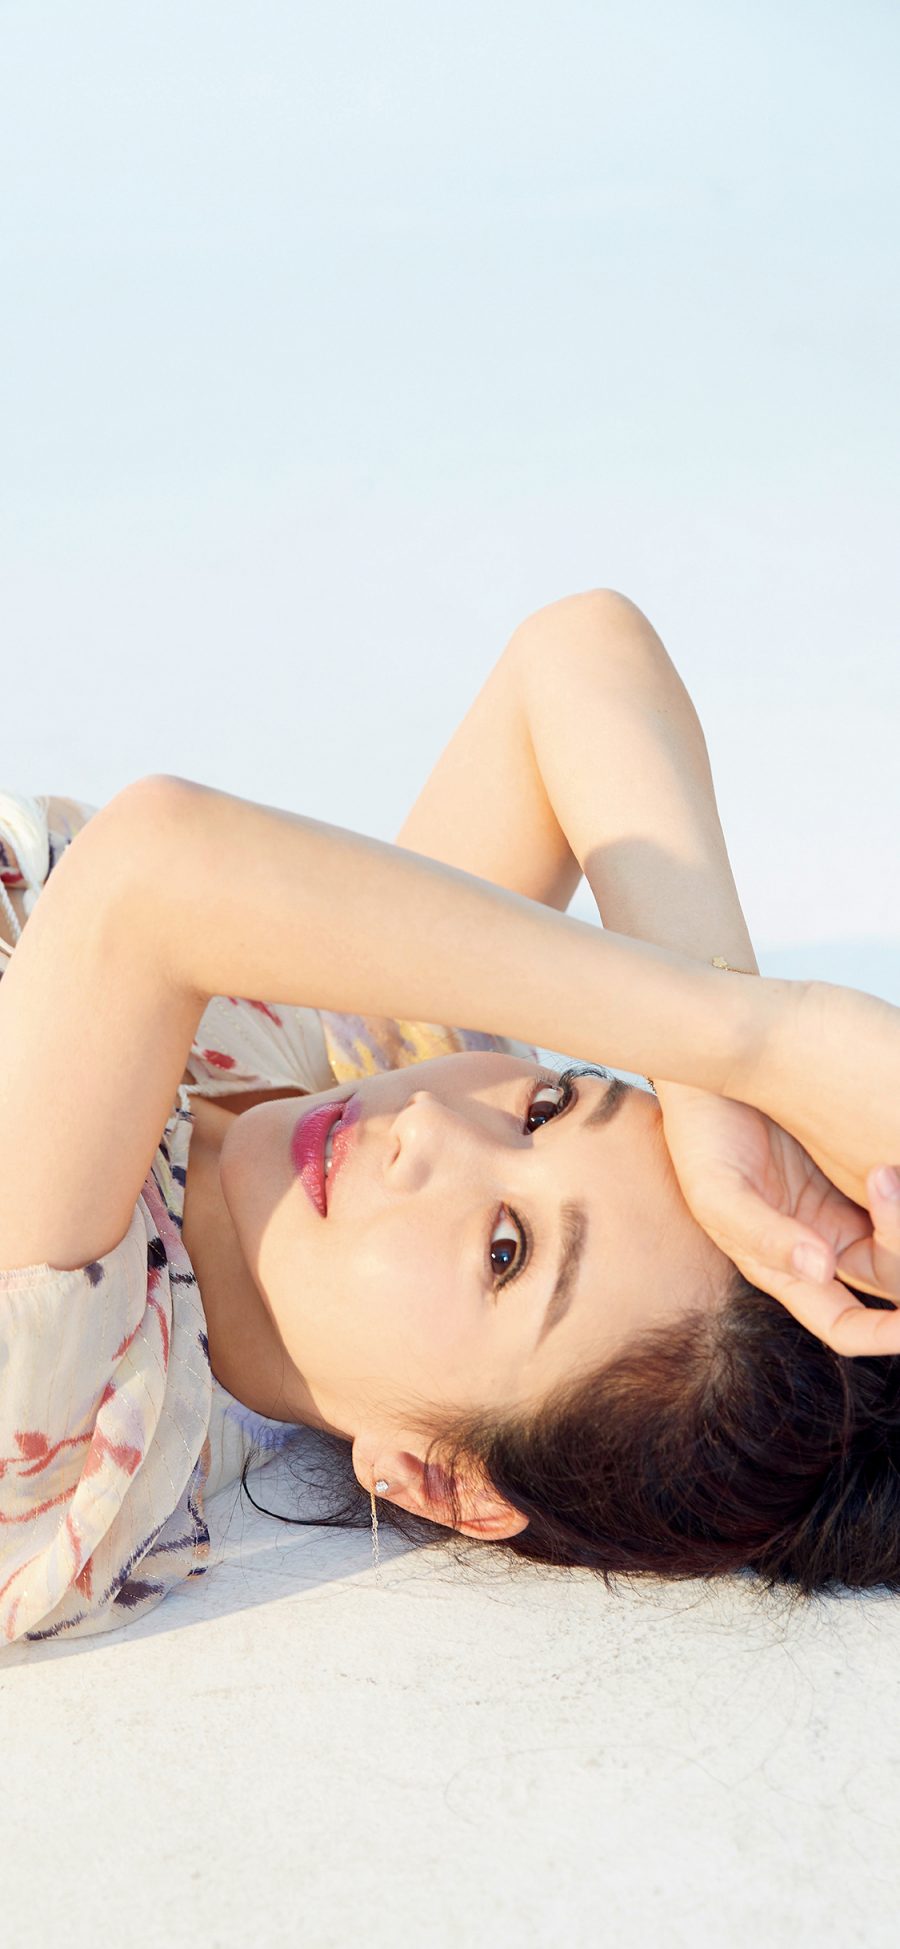 [2436×1125]陈松伶 香港 演员 明星 艺人 苹果手机美女壁纸图片